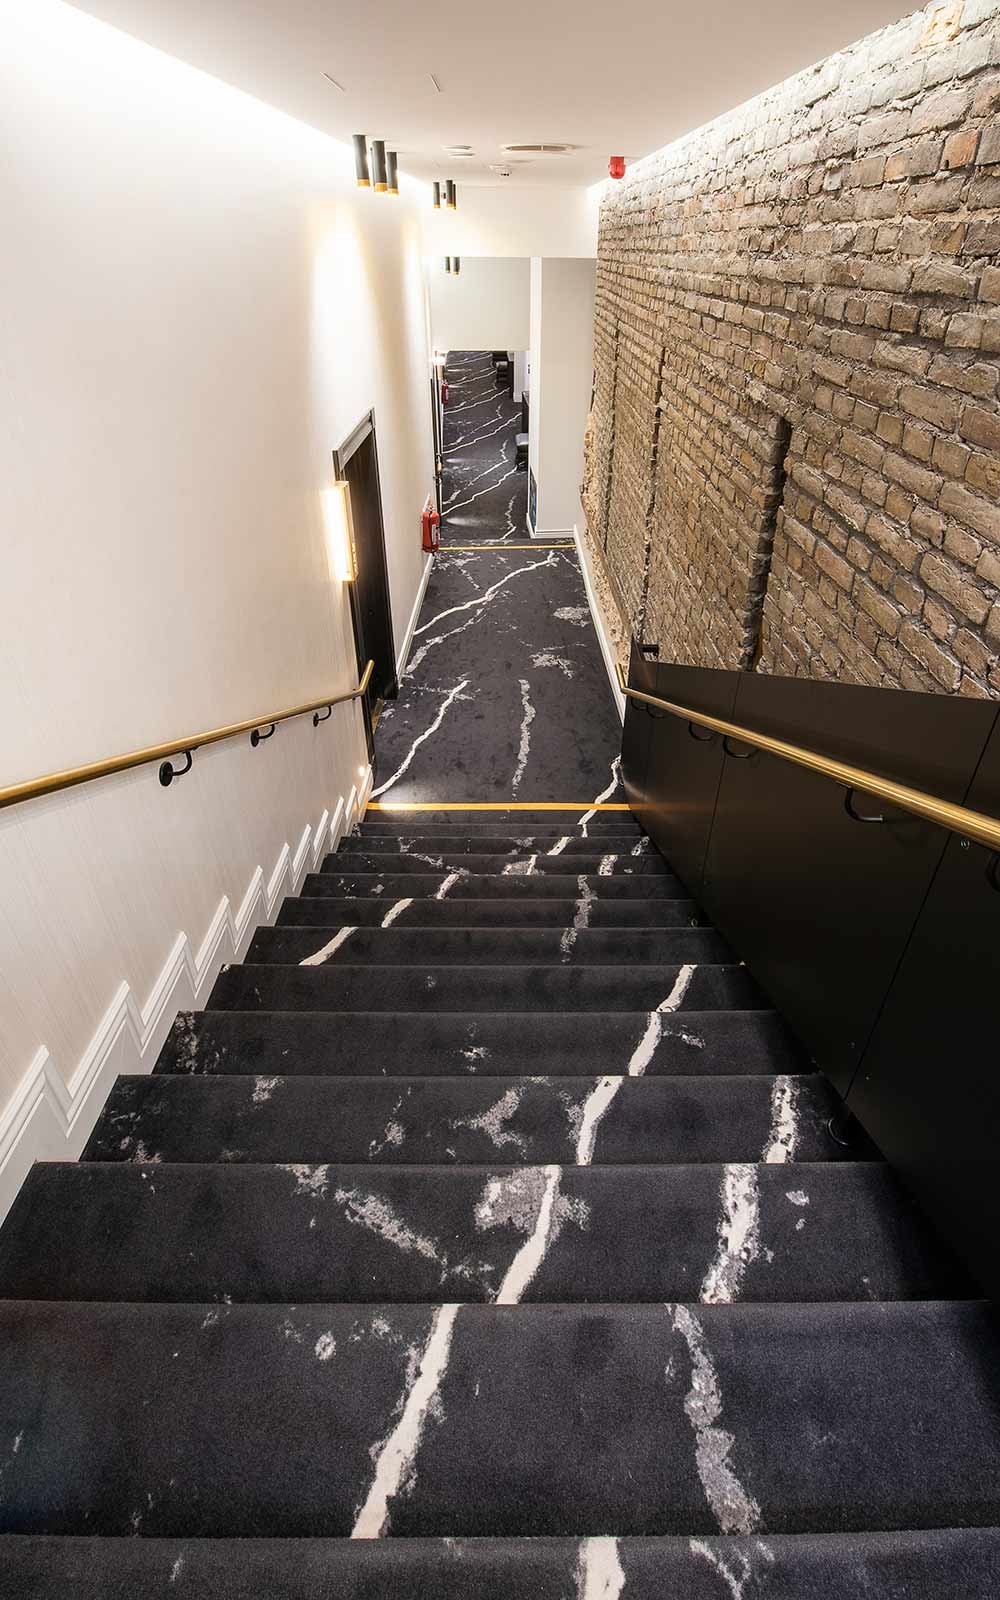 Hotel Teppichboden: Hotelflur mit Teppichboden in Marmoroptik, goldenen Raumakzenten und gemauerter Wand